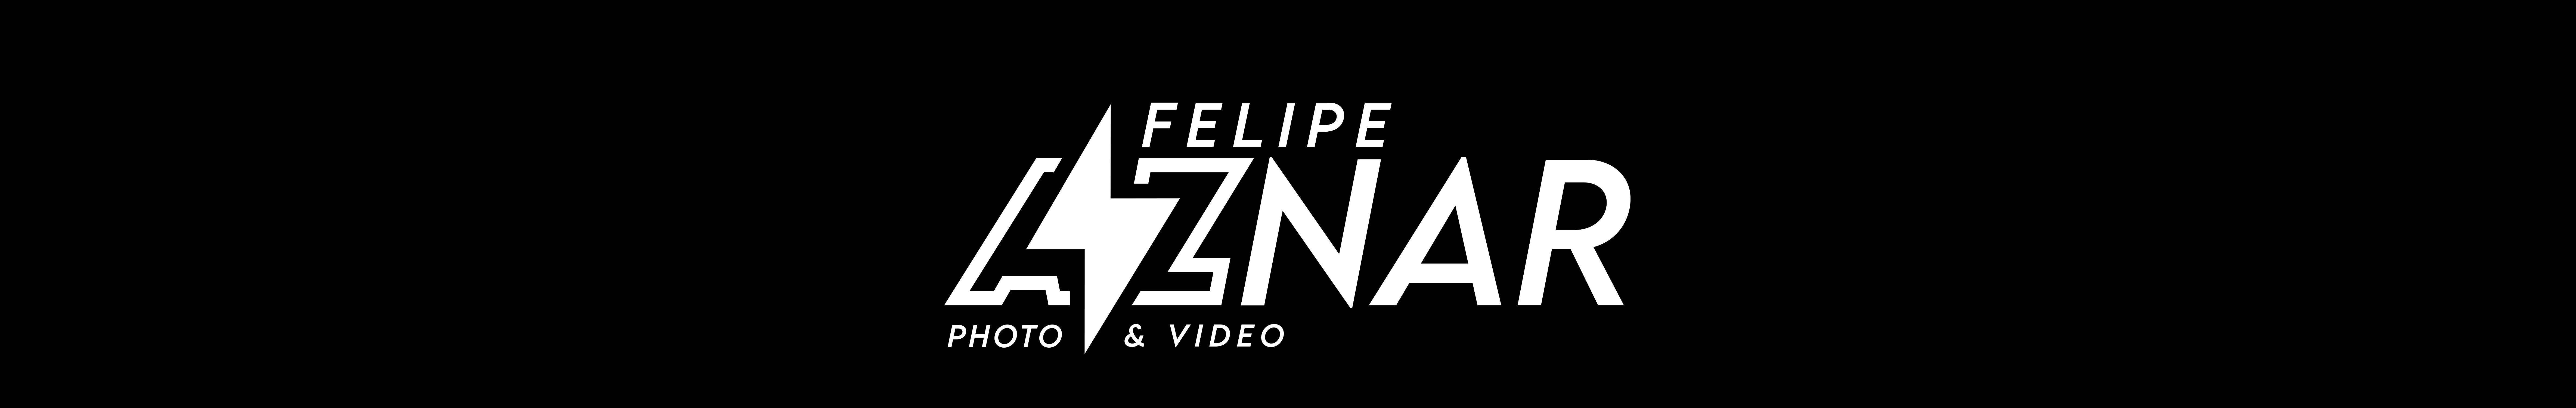 Felipe Aznar's profile banner